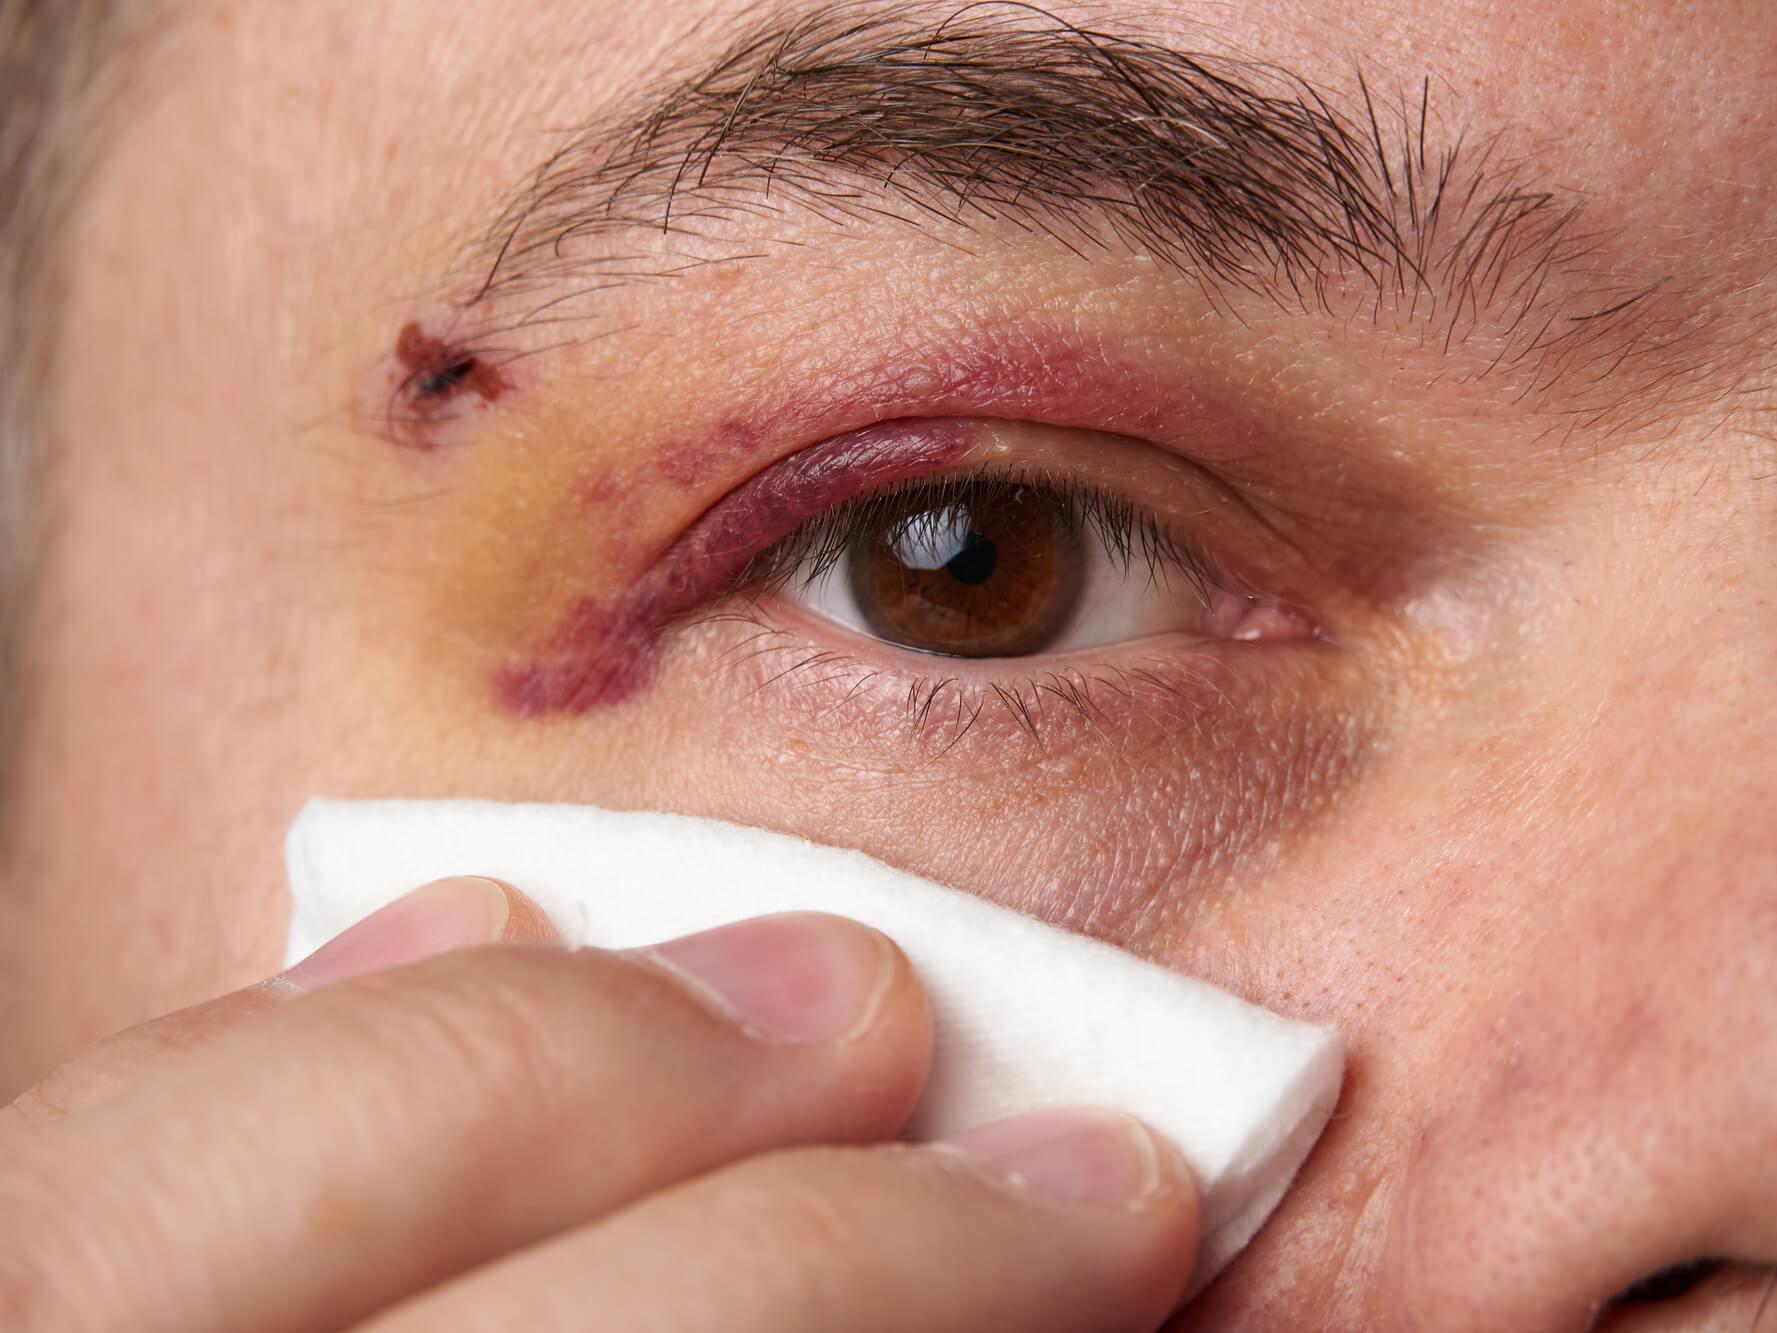 Das Anwenden einer kalten Kompresse auf die Augenpartie kurz nach einer Verletzung kann Schwellungen reduzieren und Schmerzen lindern.